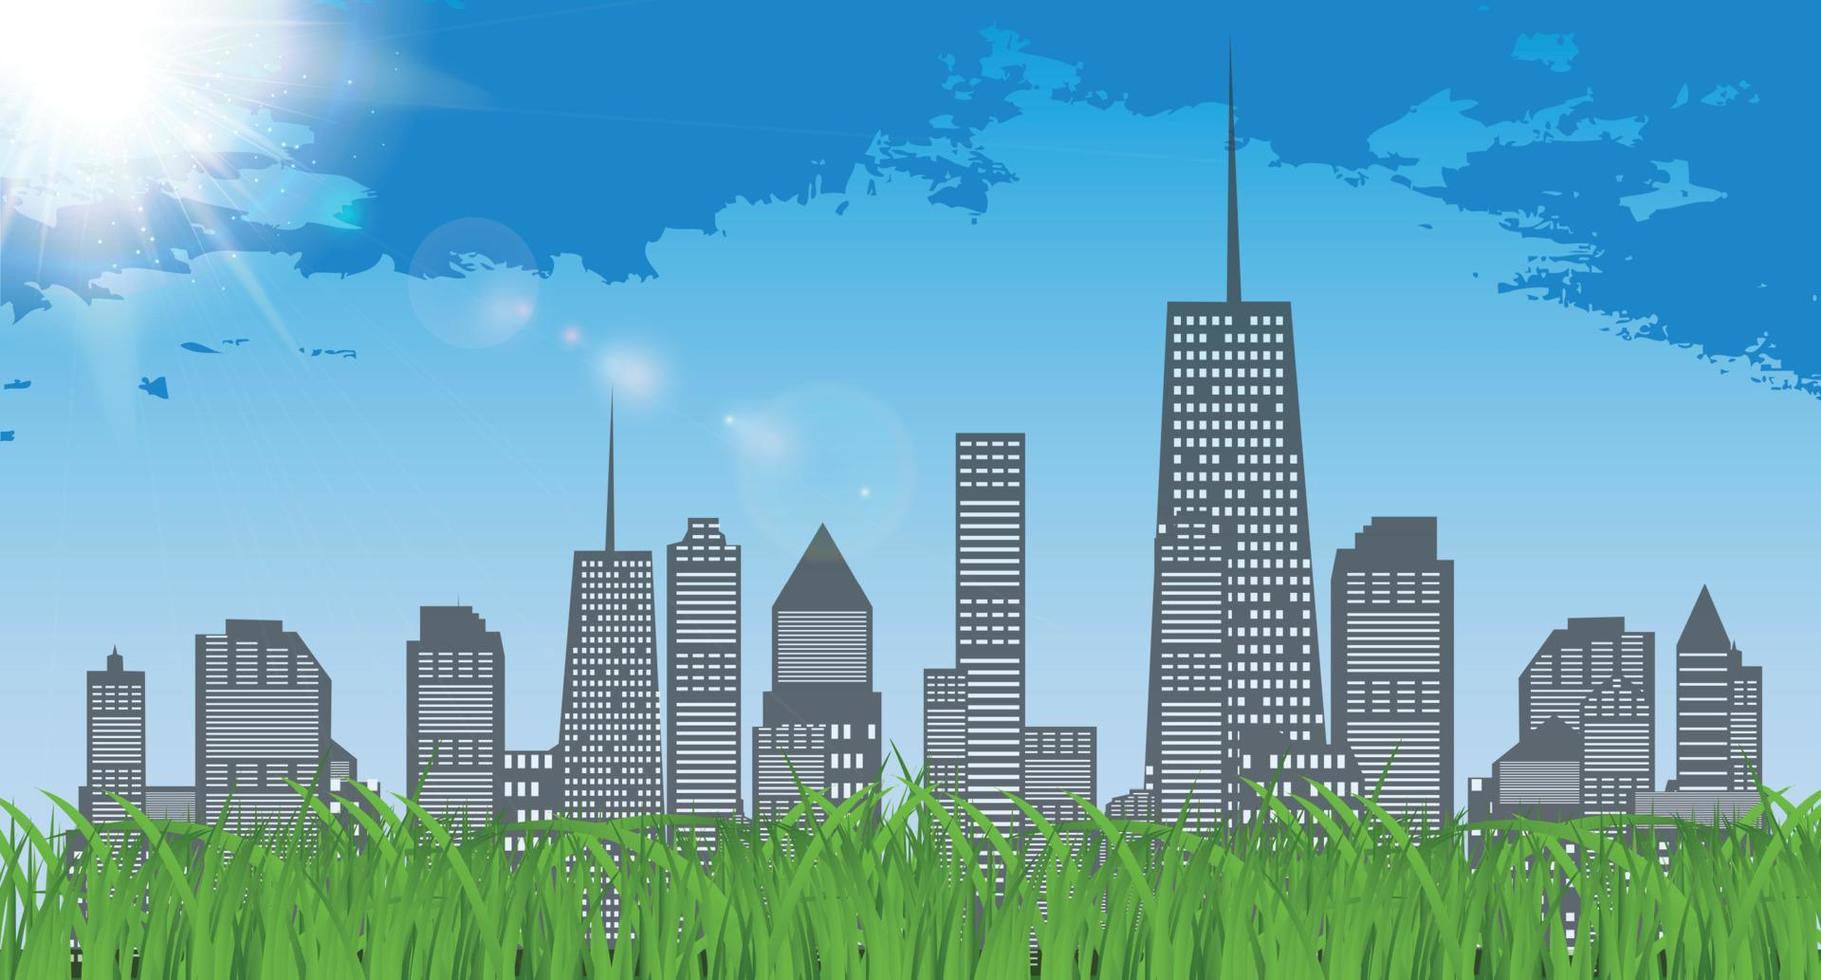 soleado natural en el fondo de la ciudad de negocios y la hierba verde. ilustración vectorial de fondo vector